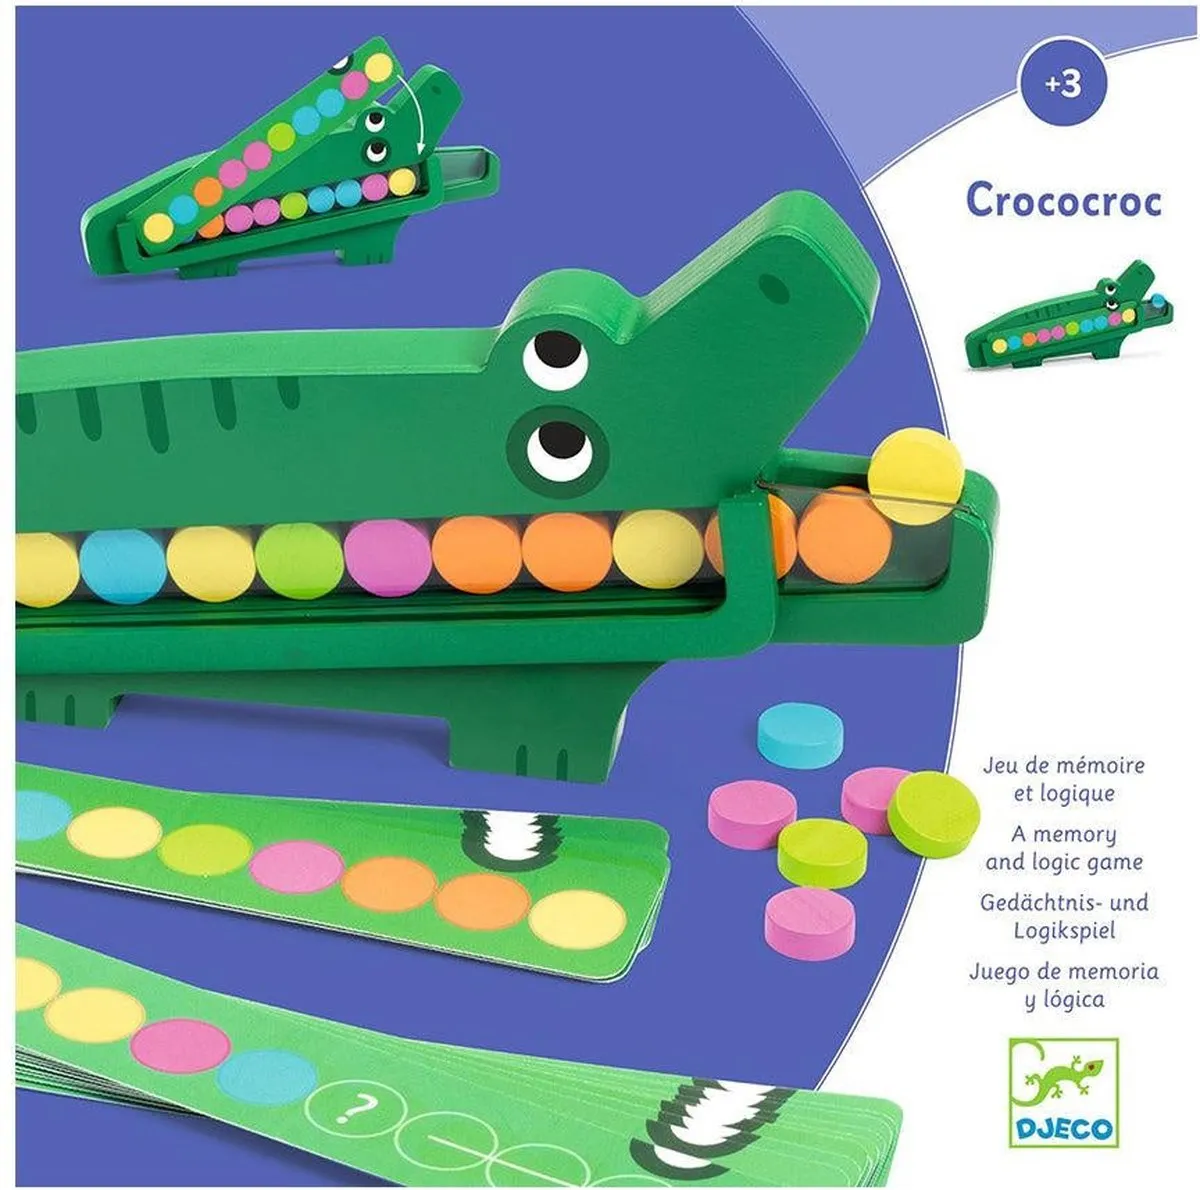 Crococroc speelgoed